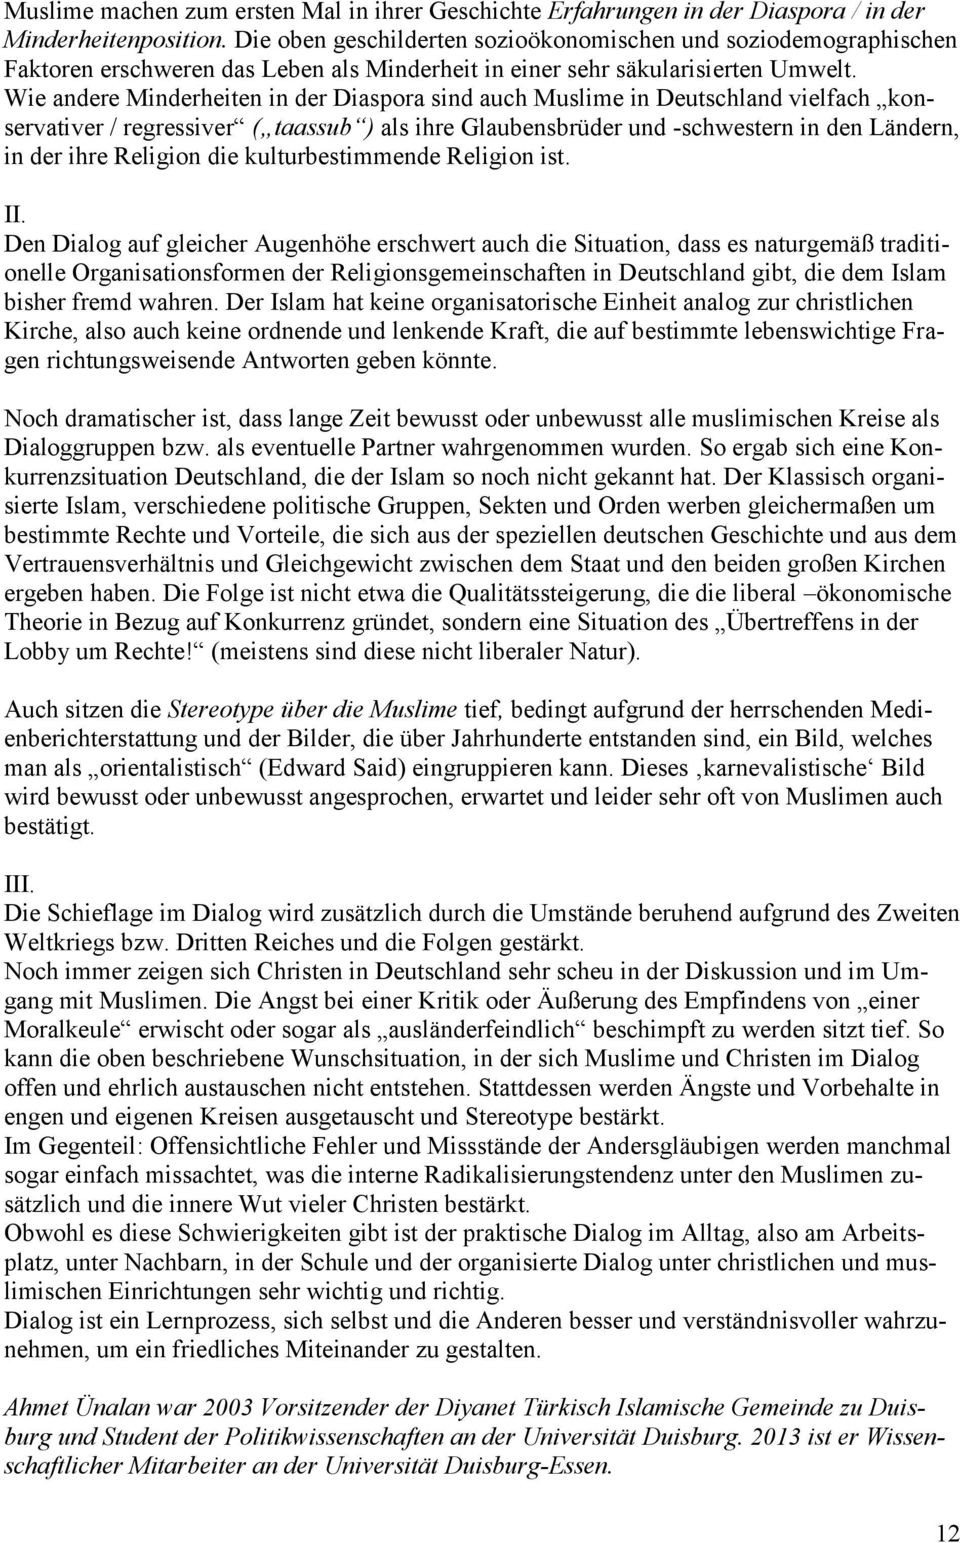 Wie andere Minderheiten in der Diaspora sind auch Muslime in Deutschland vielfach konservativer / regressiver ( taassub ) als ihre Glaubensbrüder und -schwestern in den Ländern, in der ihre Religion